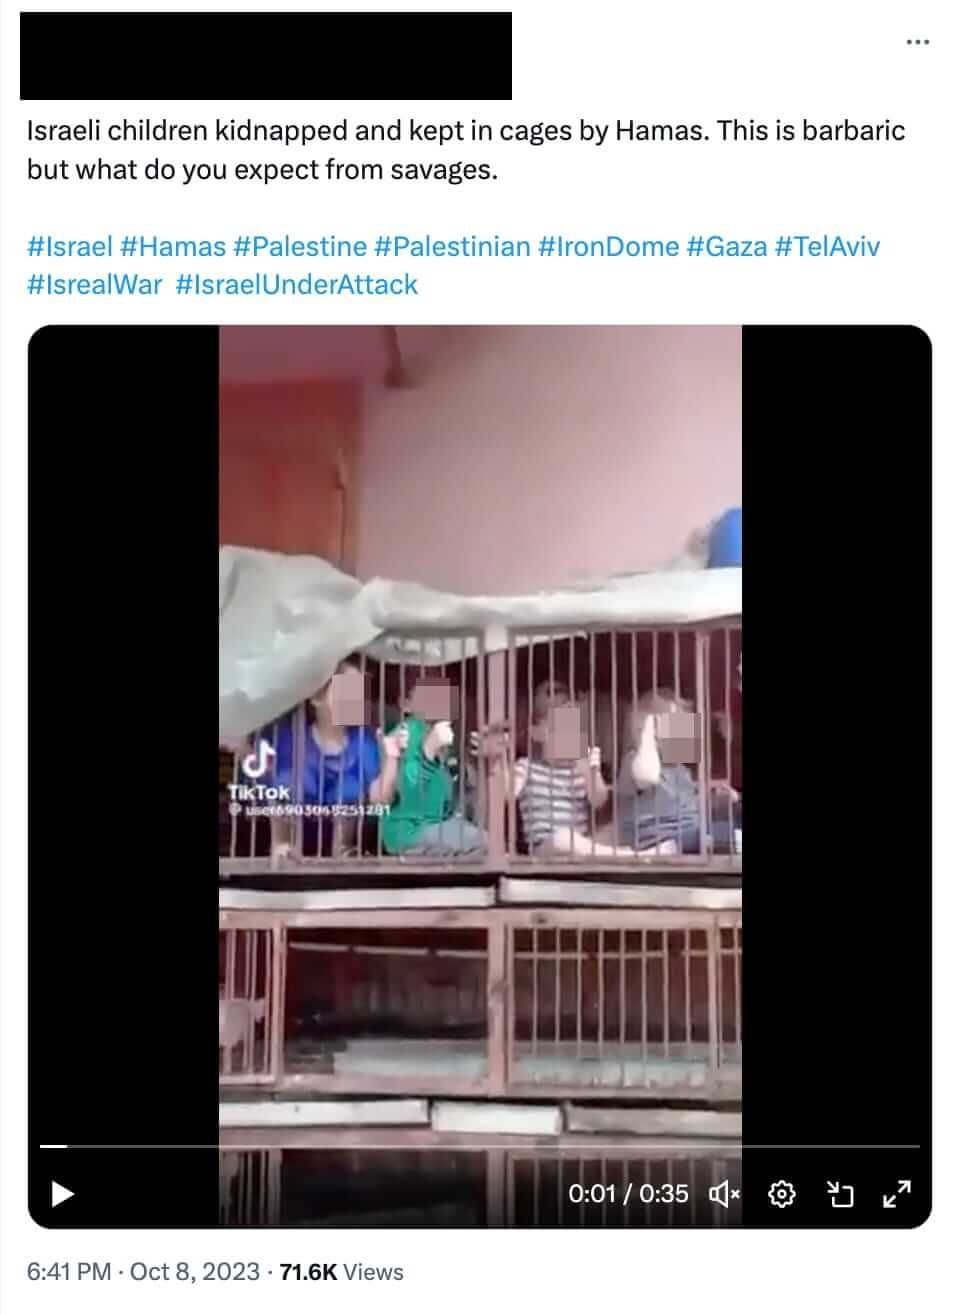 X-Beitrag mit dem Video, das Kinder in einem Käfig zeigt.